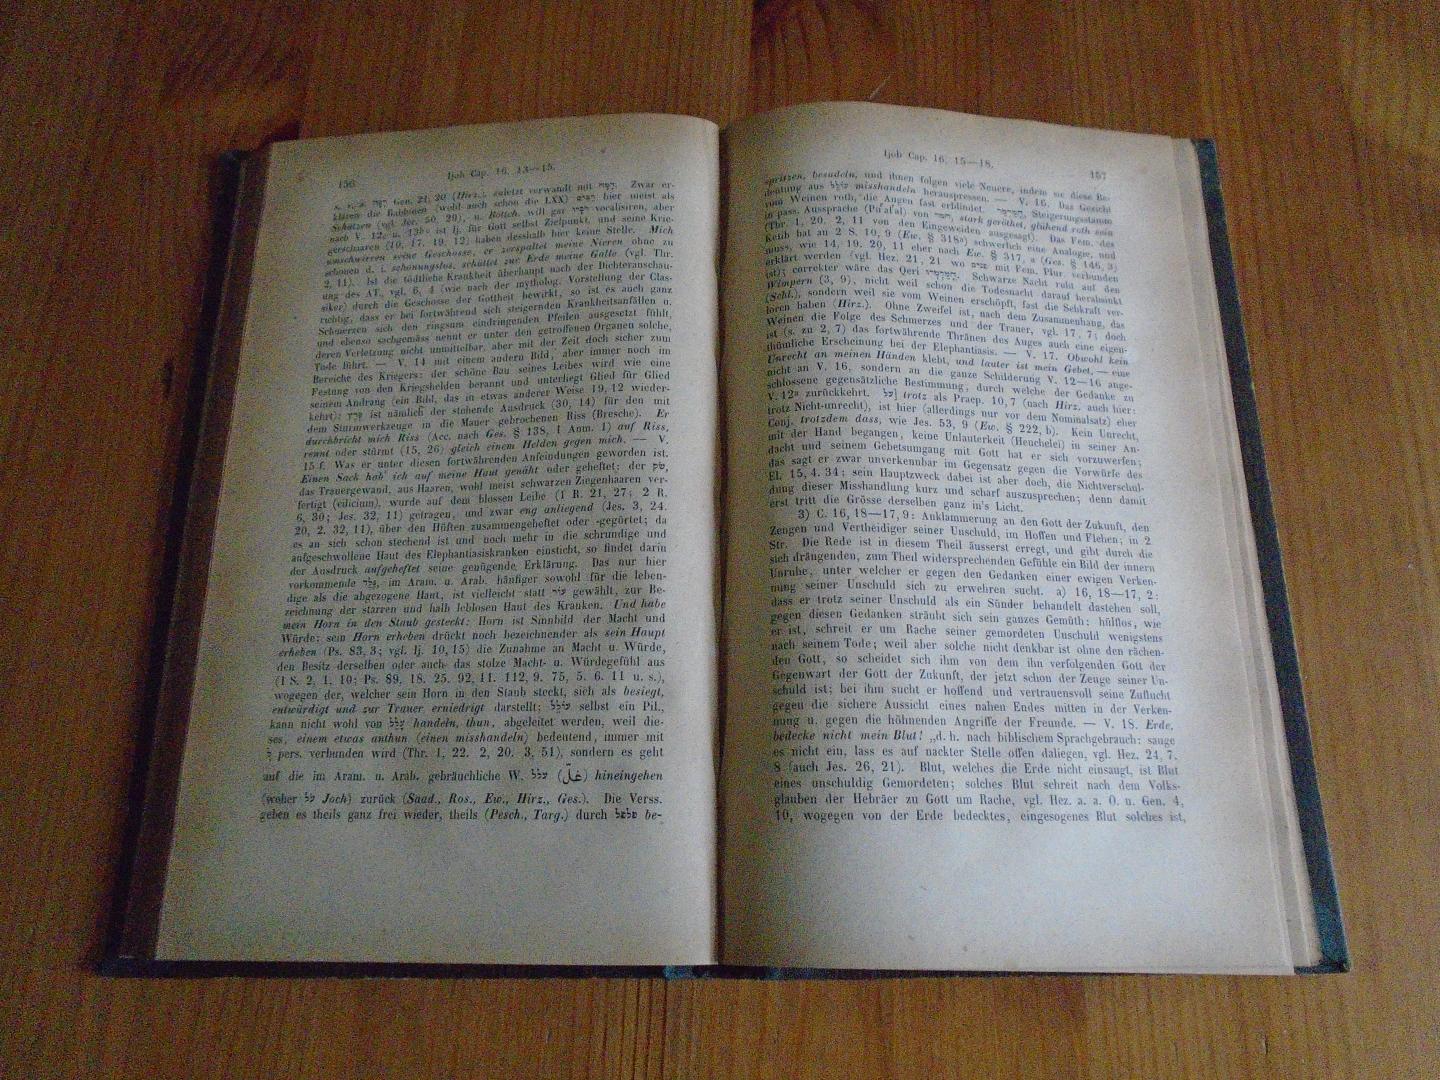 Dillmann, August - Hiob. Für die dritte Auflage nach L. Hitzel und J. Olshausen neu bearbeitet von August Dillmann